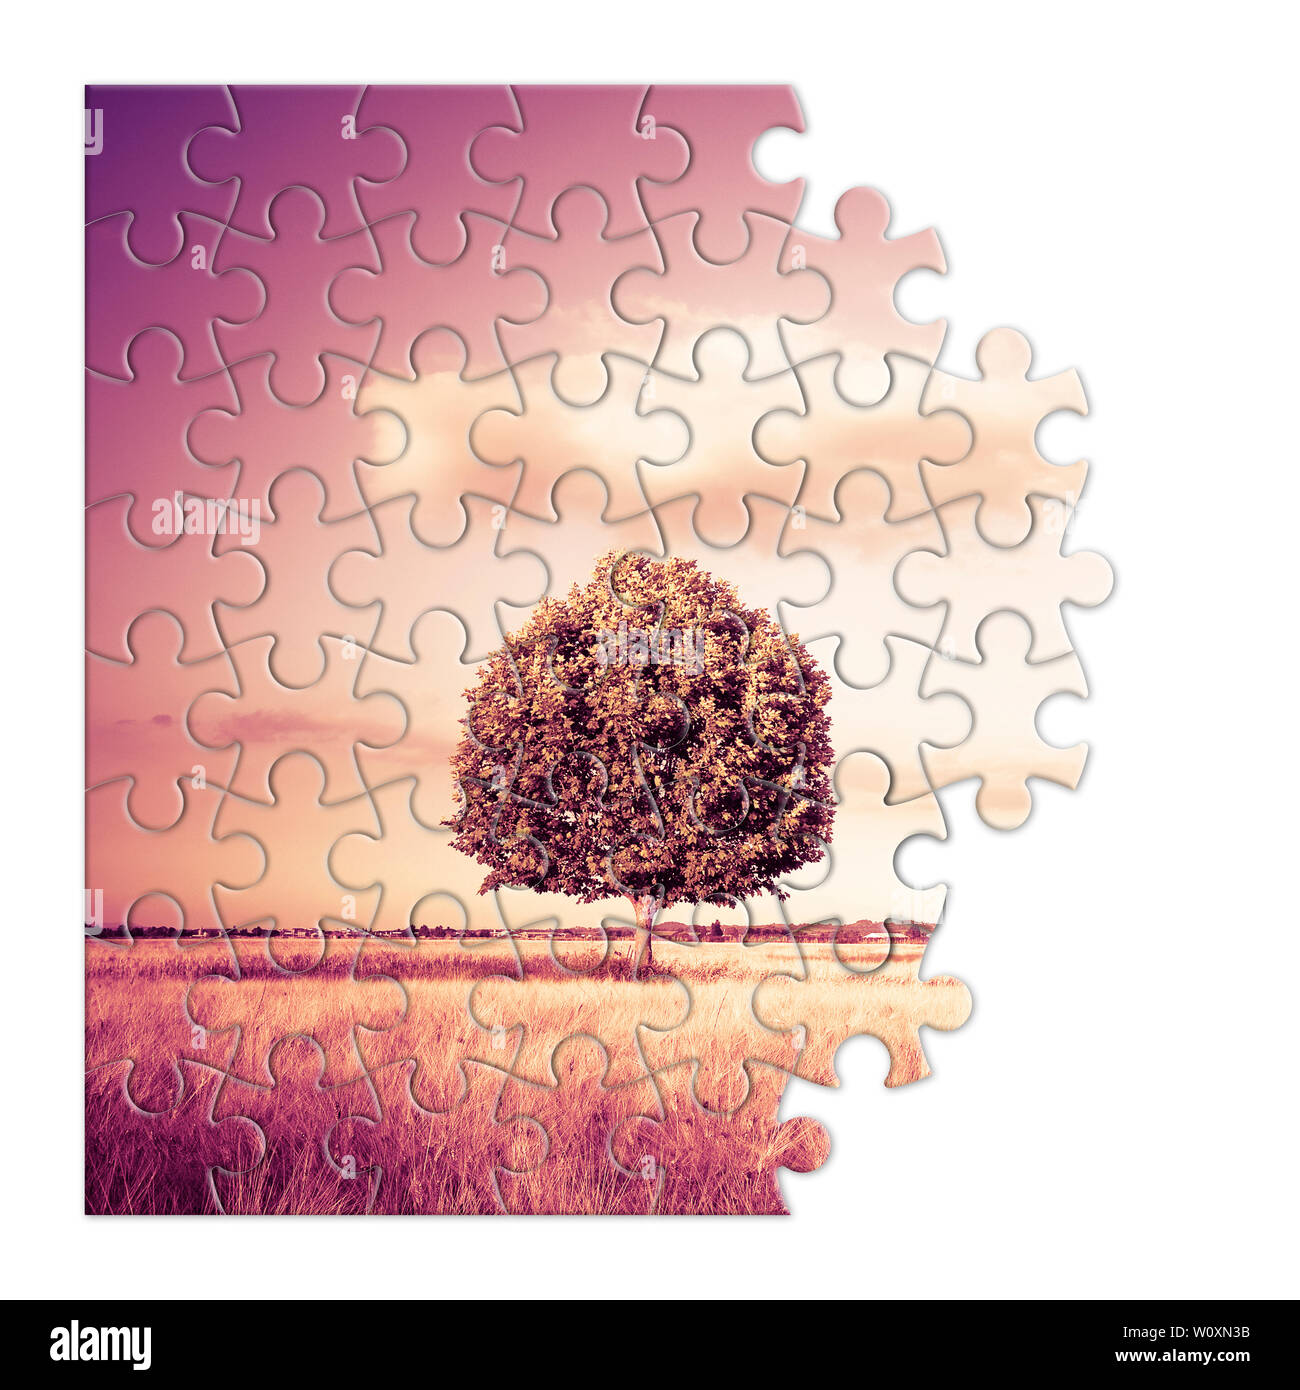 Isolierte Baum in einem Toskana wheatfield in Form von Puzzle - (Toskana - Italien-getonten Bild) Stockfoto